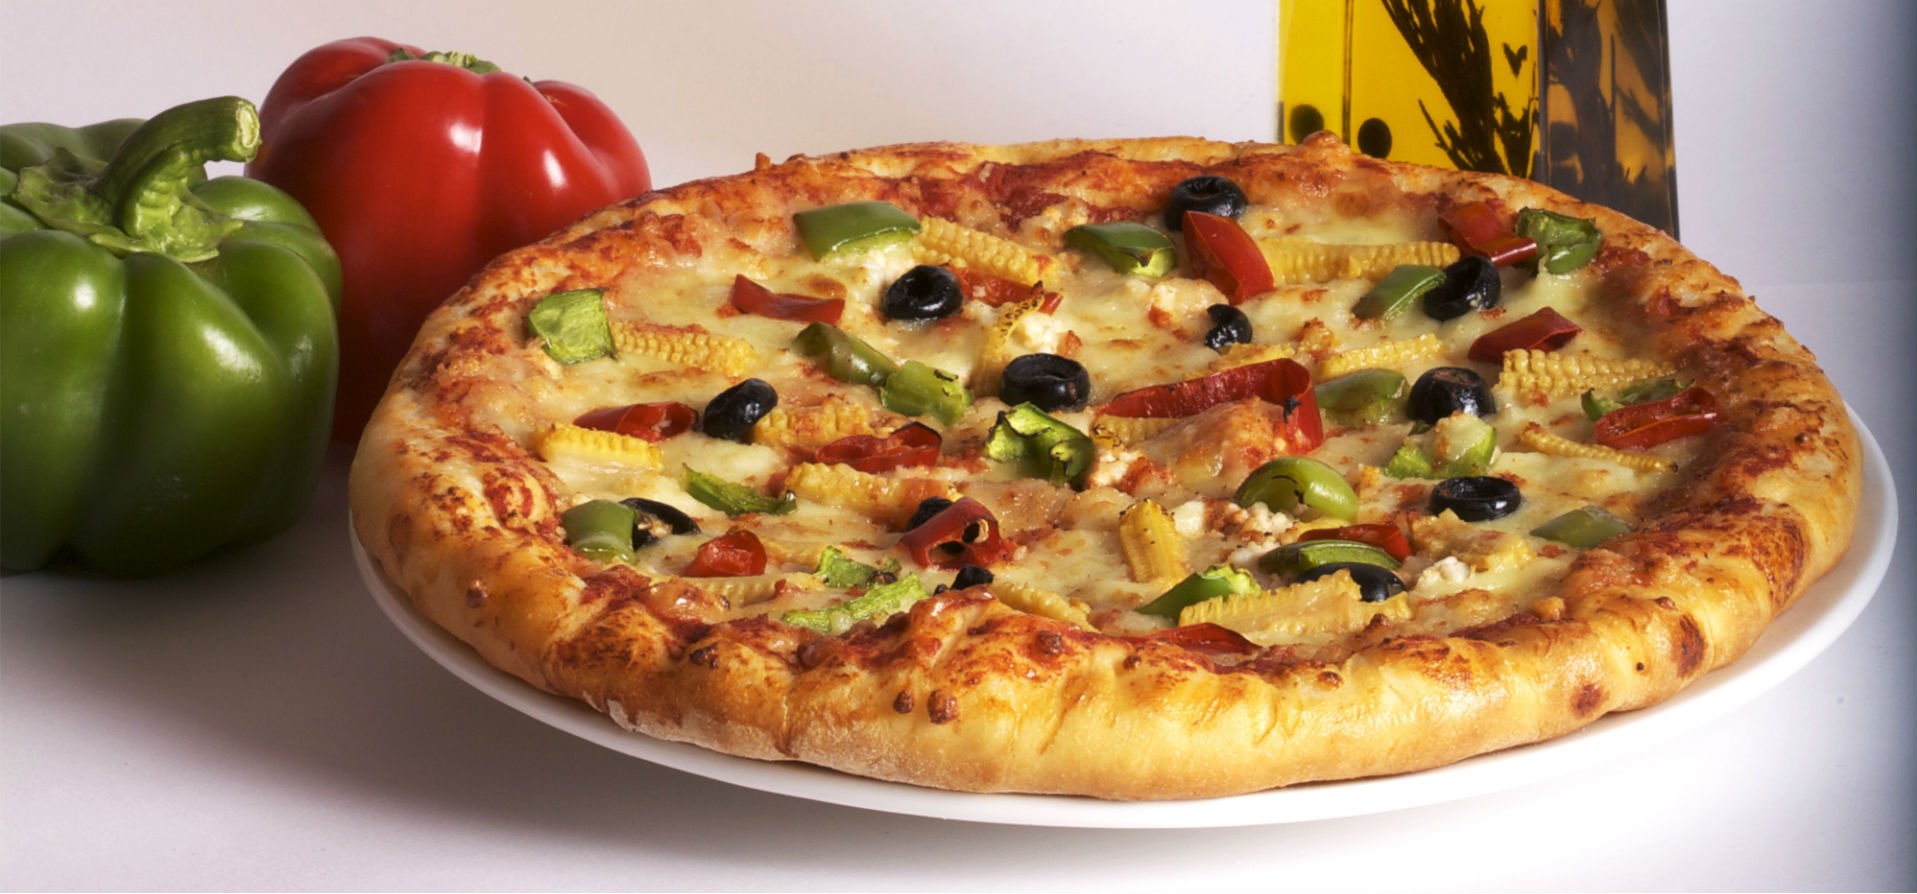 Get the Best Pizza Deals in Belfair- Here’s How!